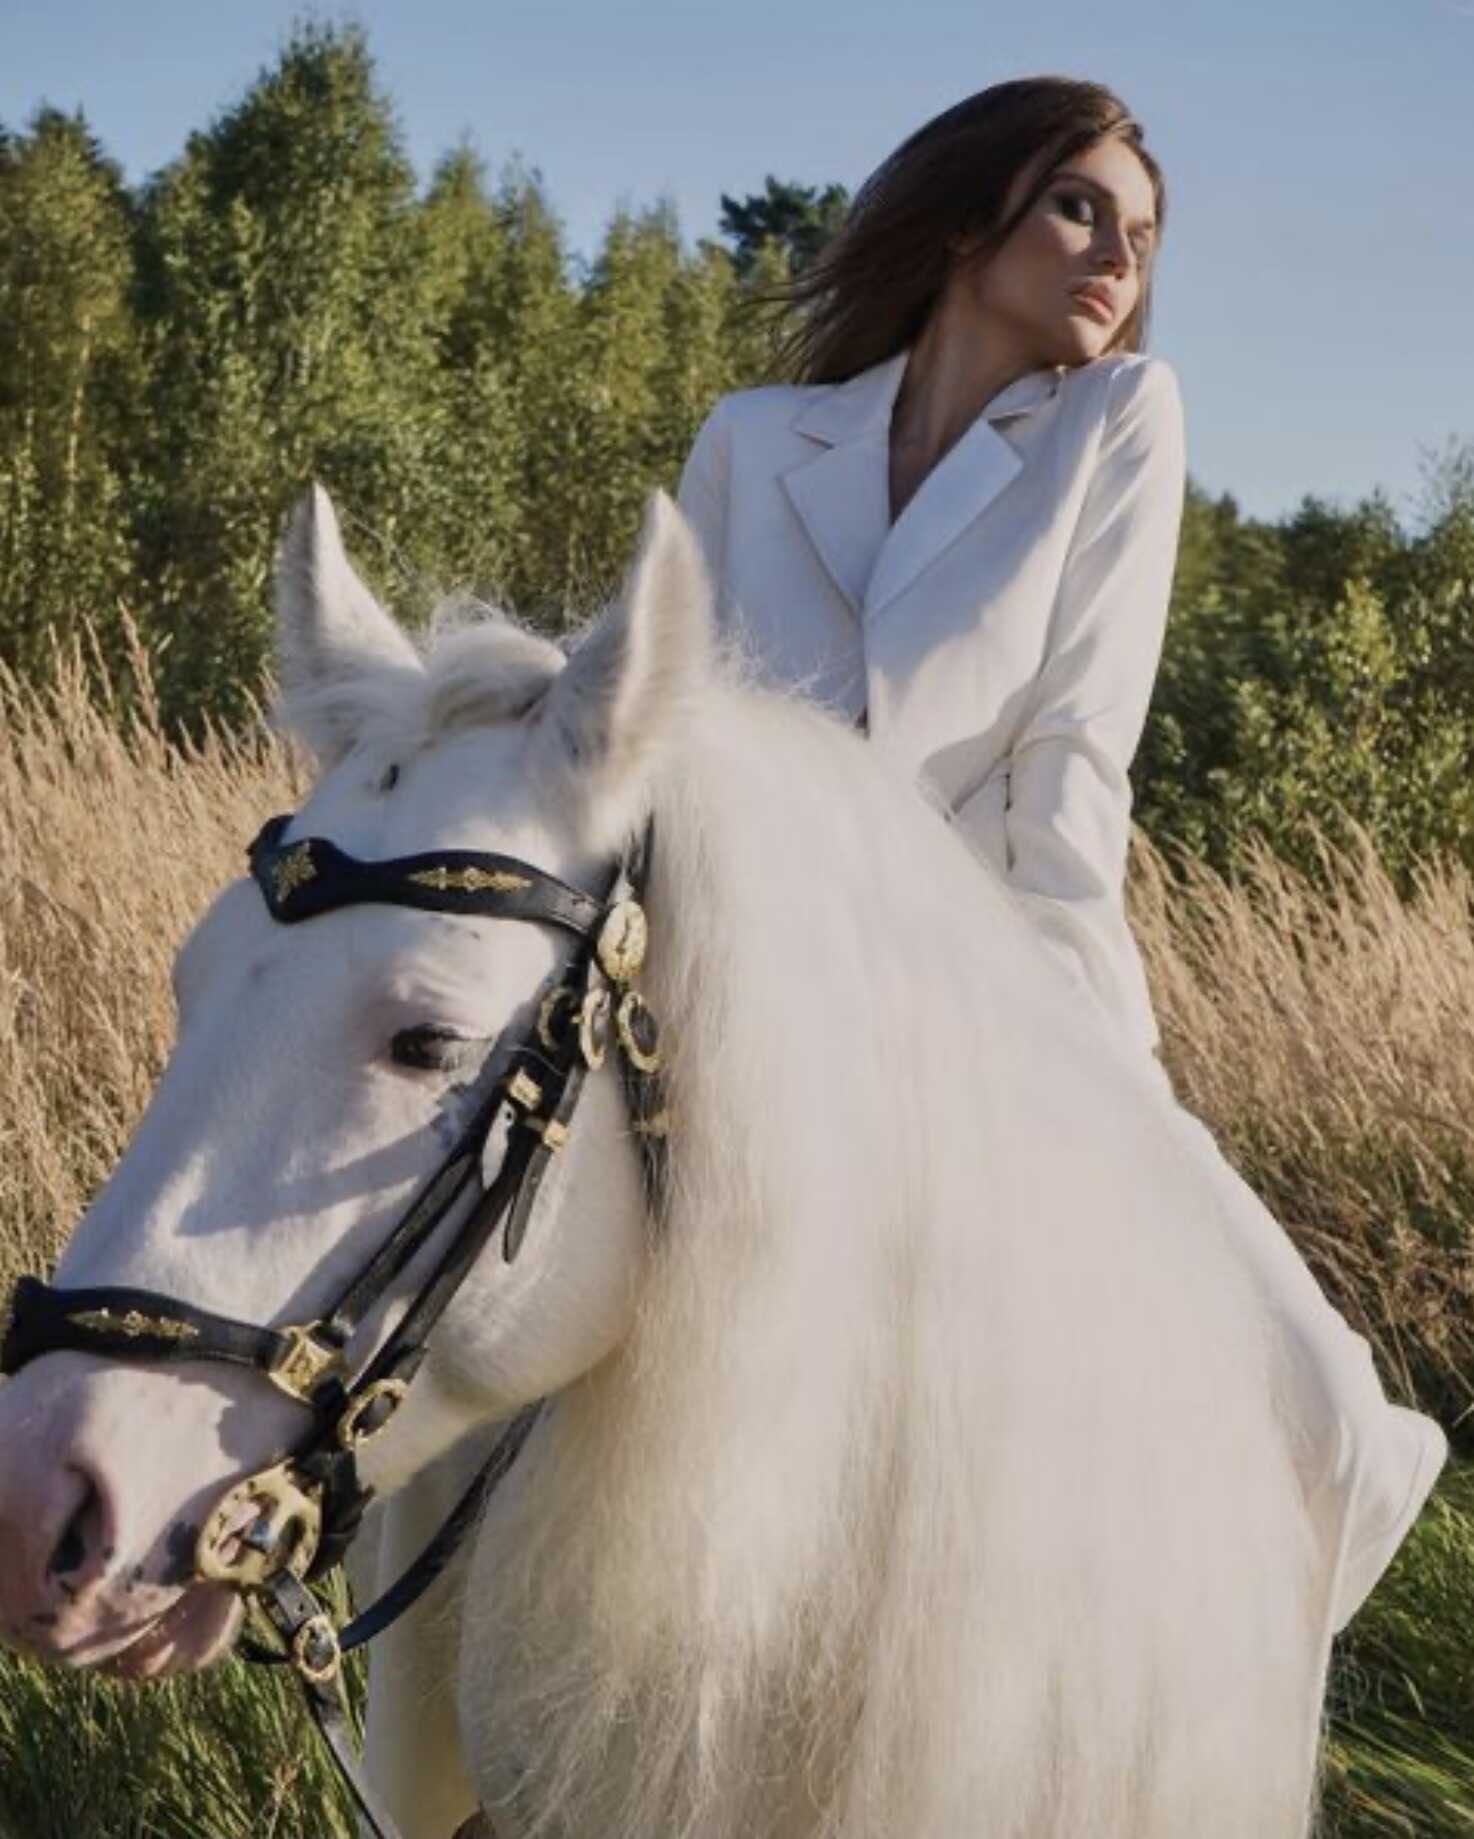 Алена Водонаева, полностью обнажив грудь, ездила по лесу на лошади, преследуя тайный умысел